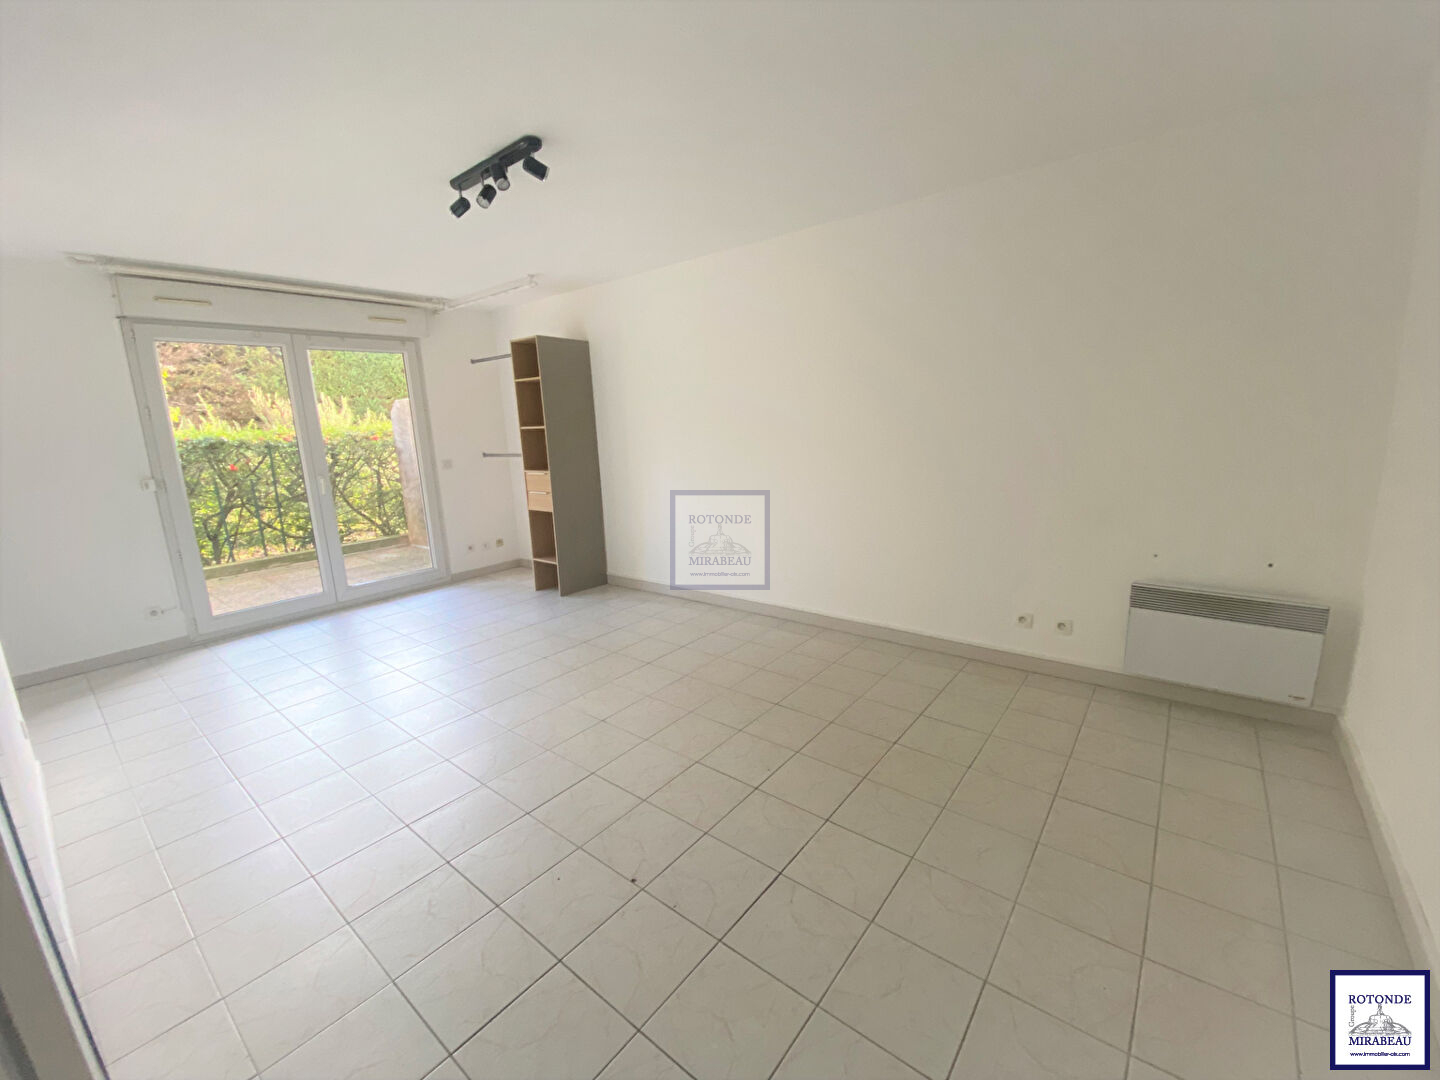 Vente Appartement AIX EN PROVENCE surface habitable de 32.03 m²